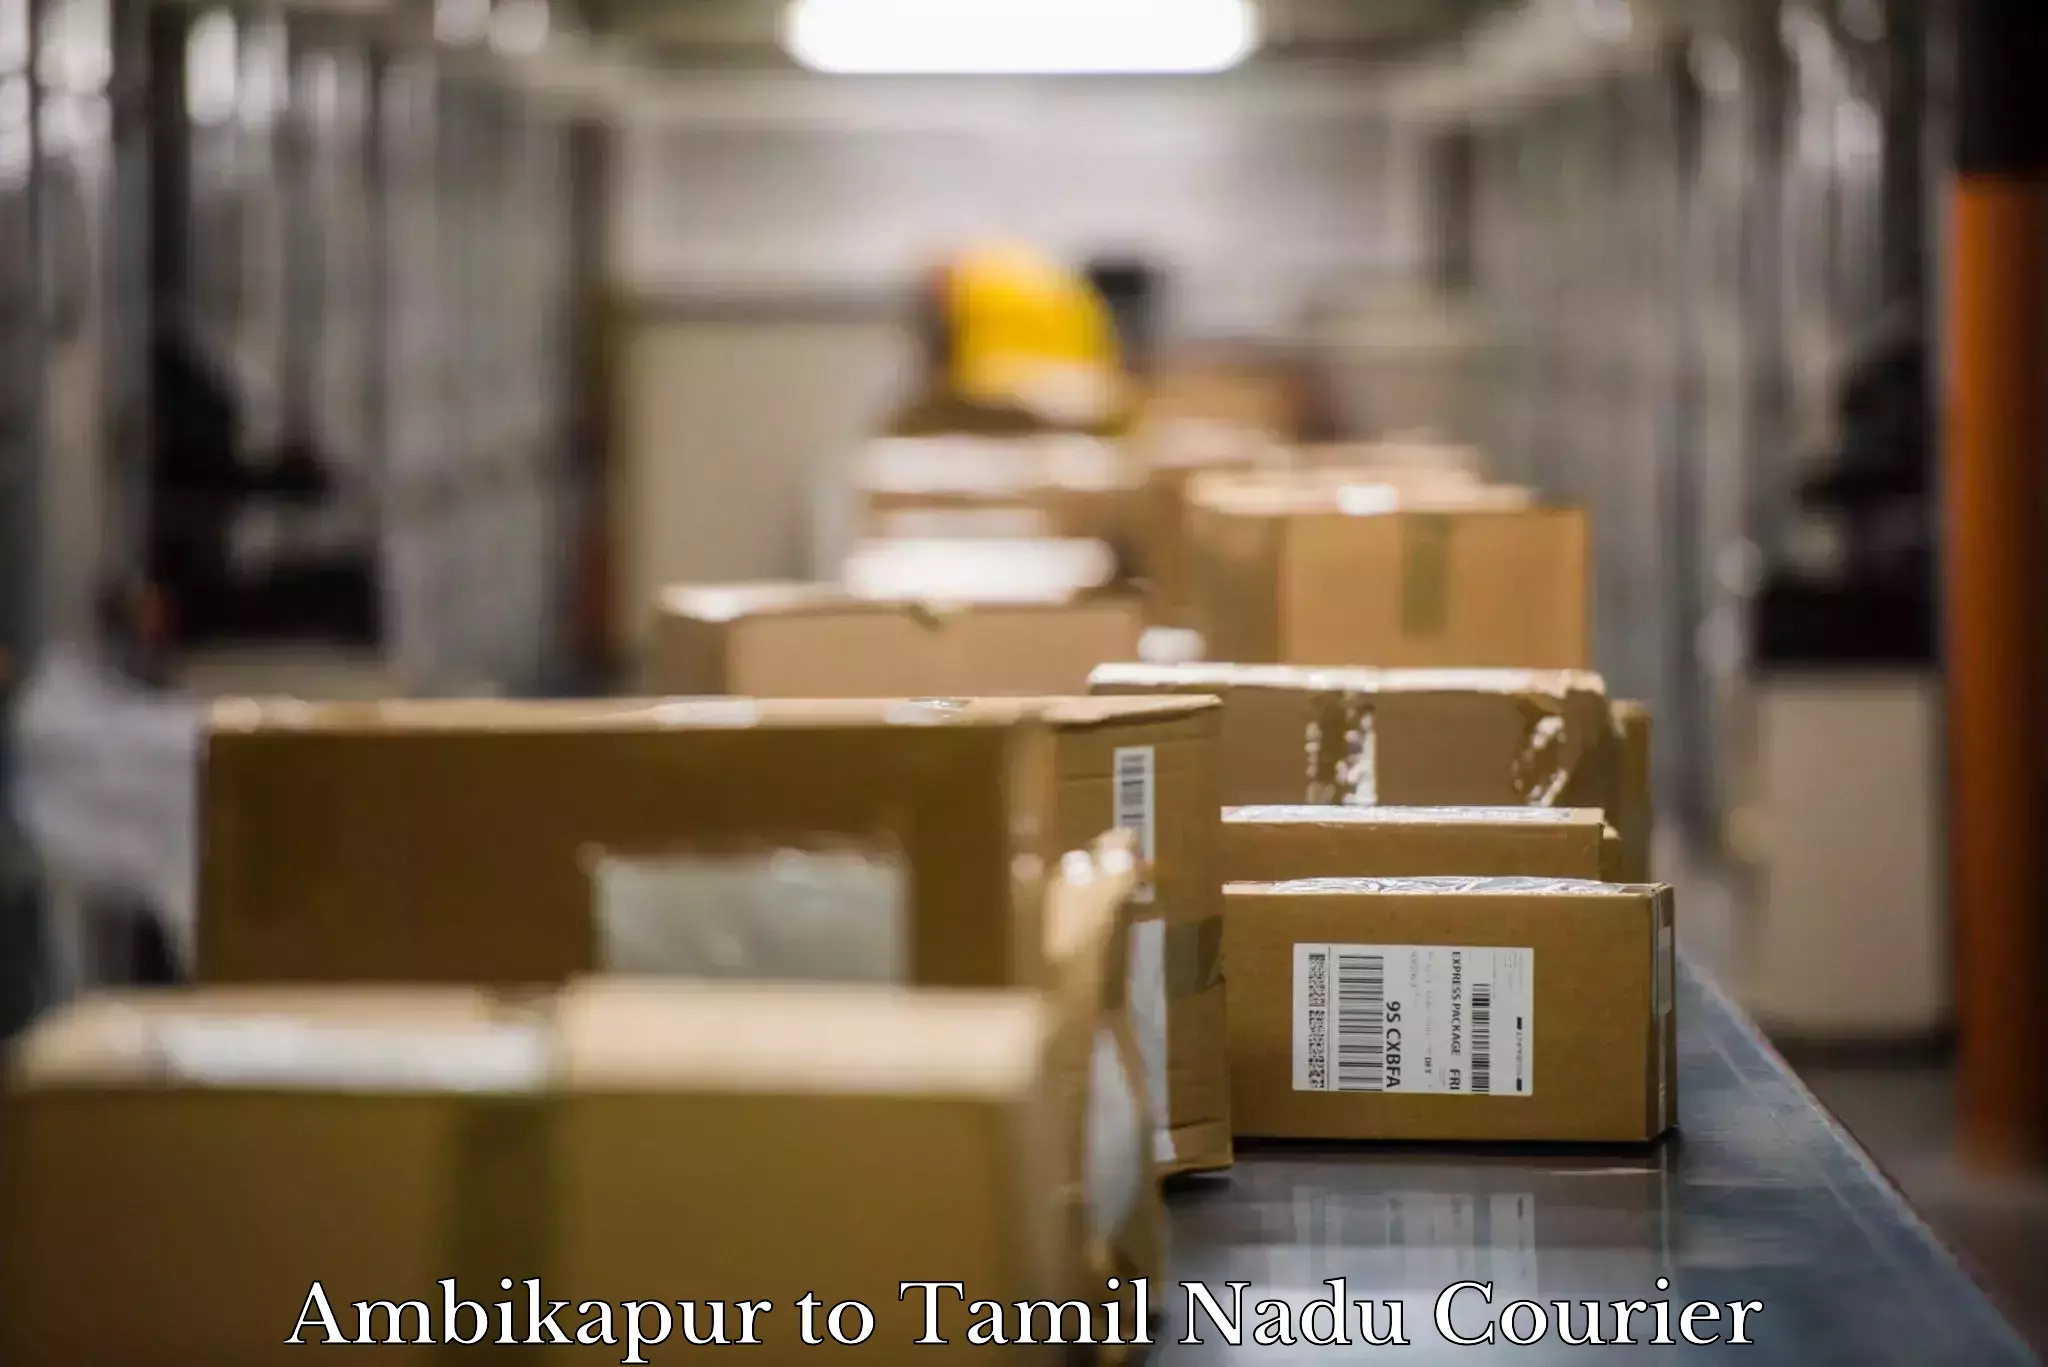 Furniture moving experts Ambikapur to Thirukkattupalli